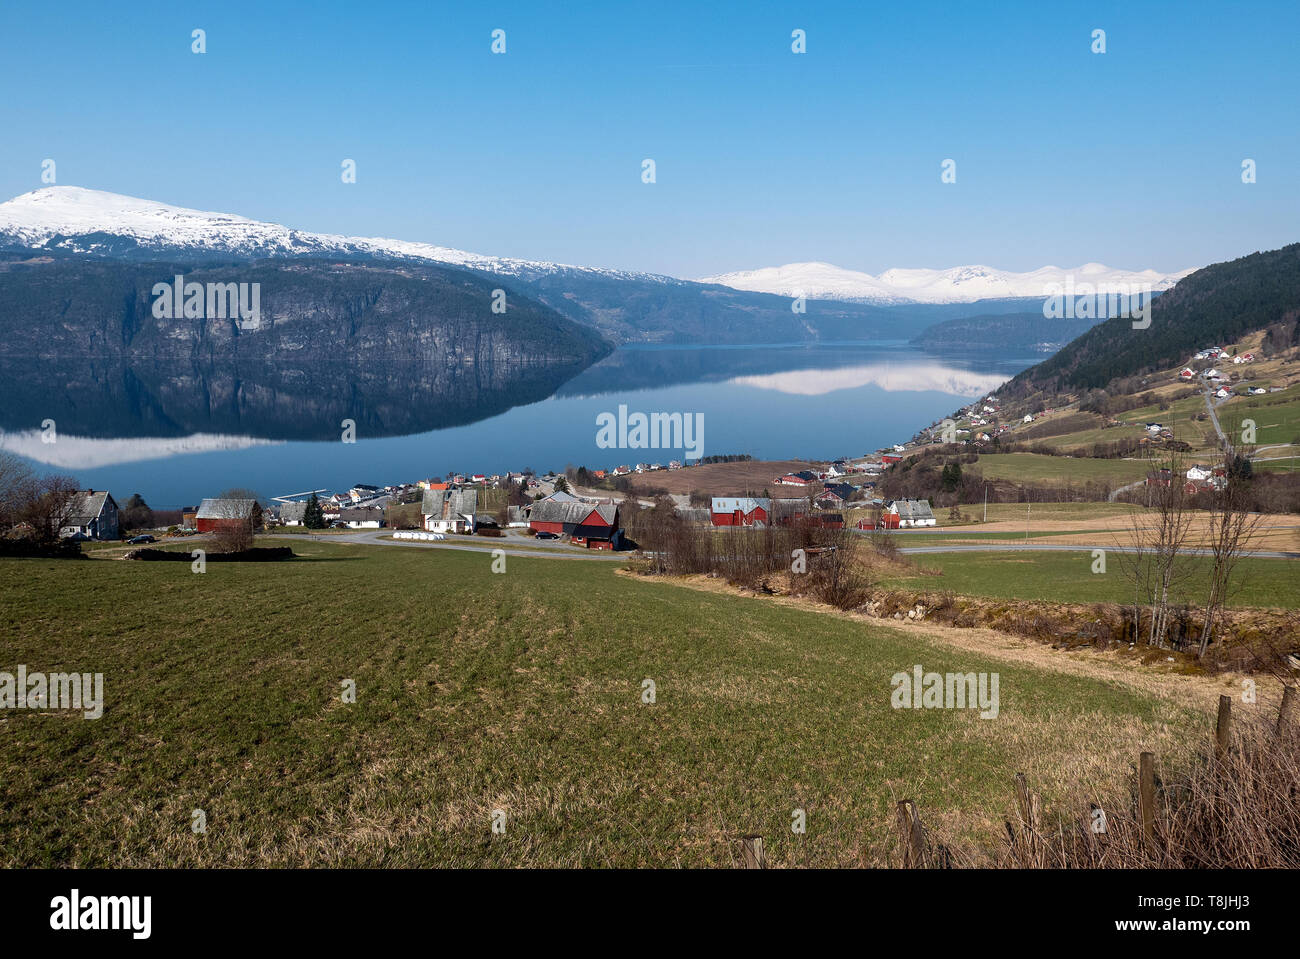 Utvik idílico en el condado de Sogn og Fjordane, Nordfjord, Noruega es una pequeña comunidad agrícola en la orilla meridional del Nordfjord no lejos de Olden. Foto de stock